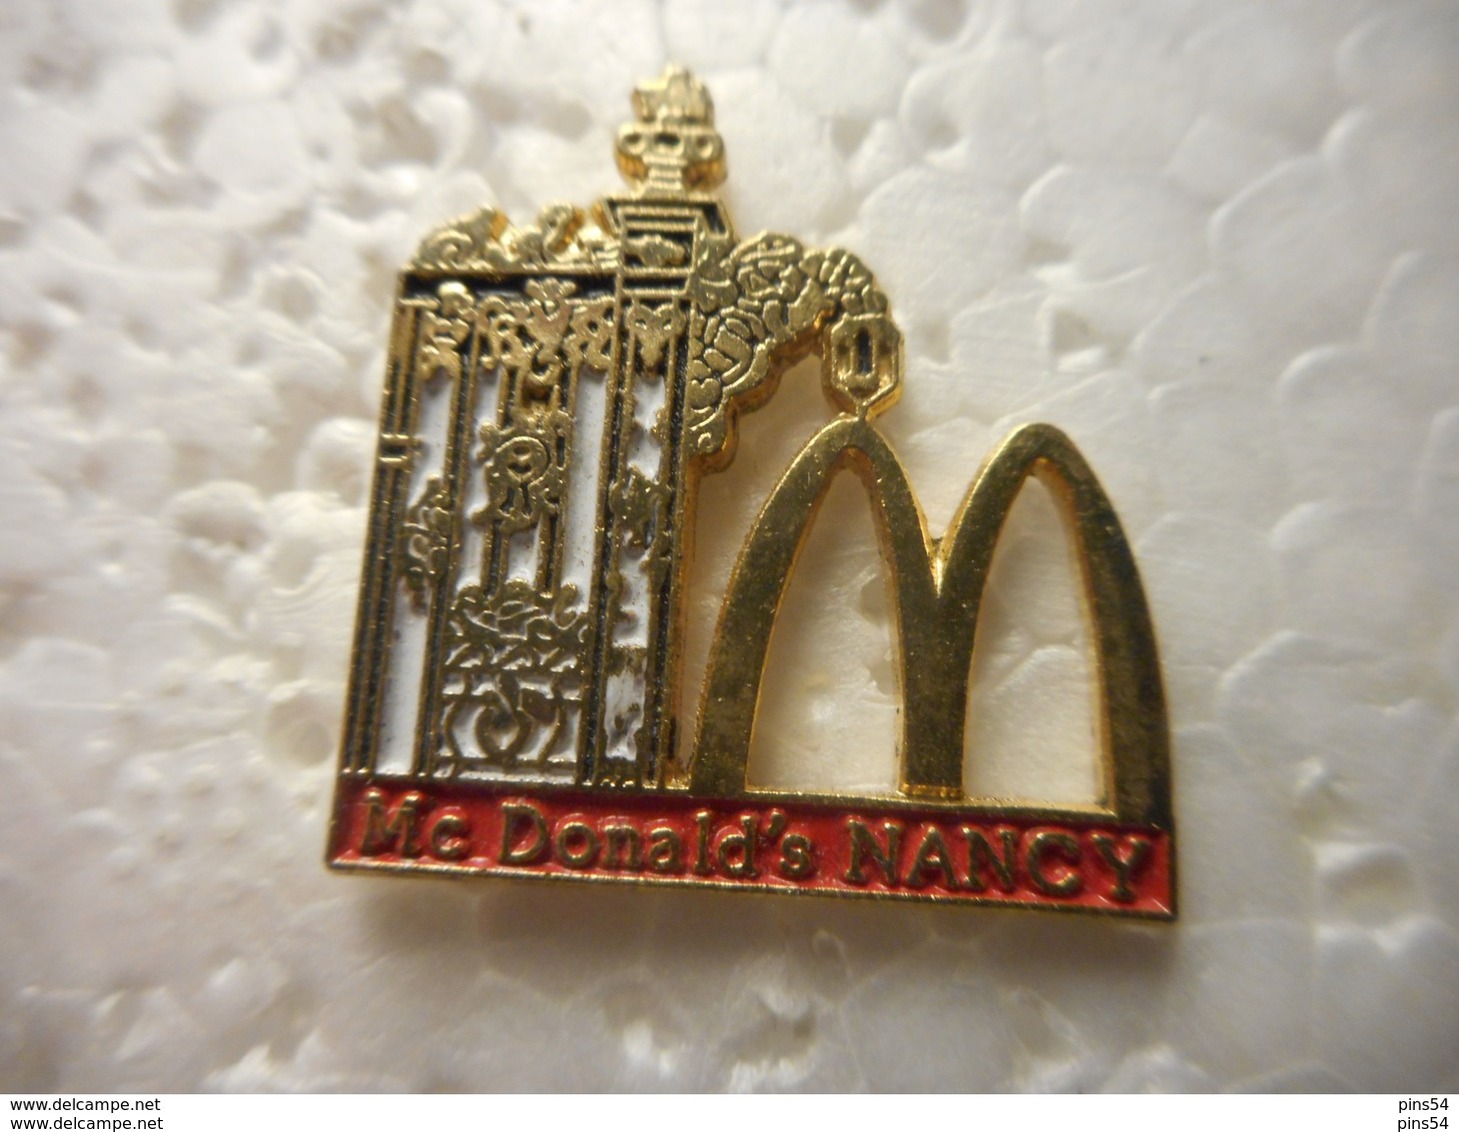 A023 -- Pin's Mac Do Nancy - McDonald's